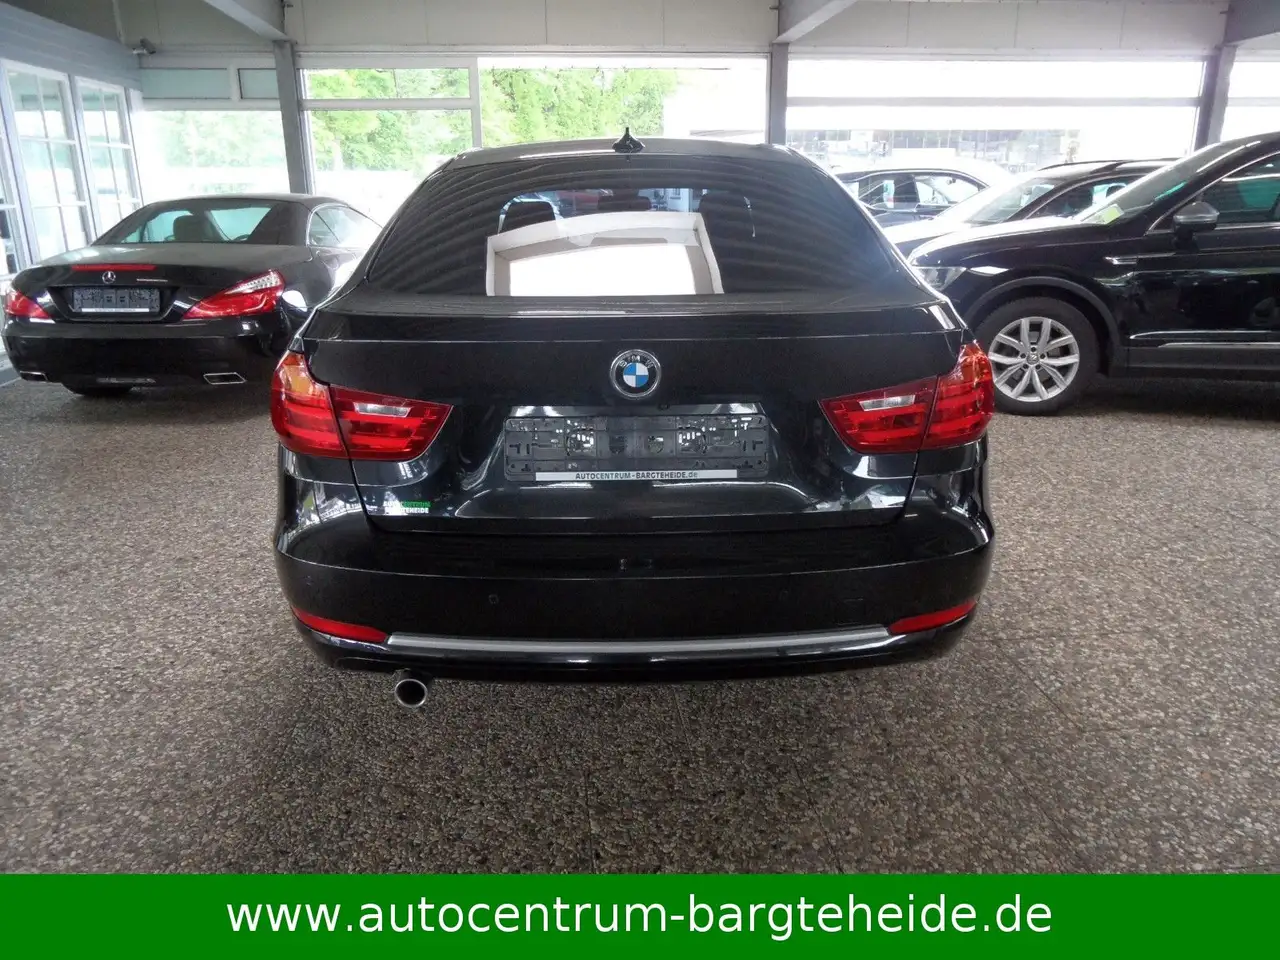 BMW 318i Touring XENON / NAVI / PANORAMADACH gebraucht kaufen in Singen  Preis 16890 eur - Int.Nr.: 3522 VERKAUFT